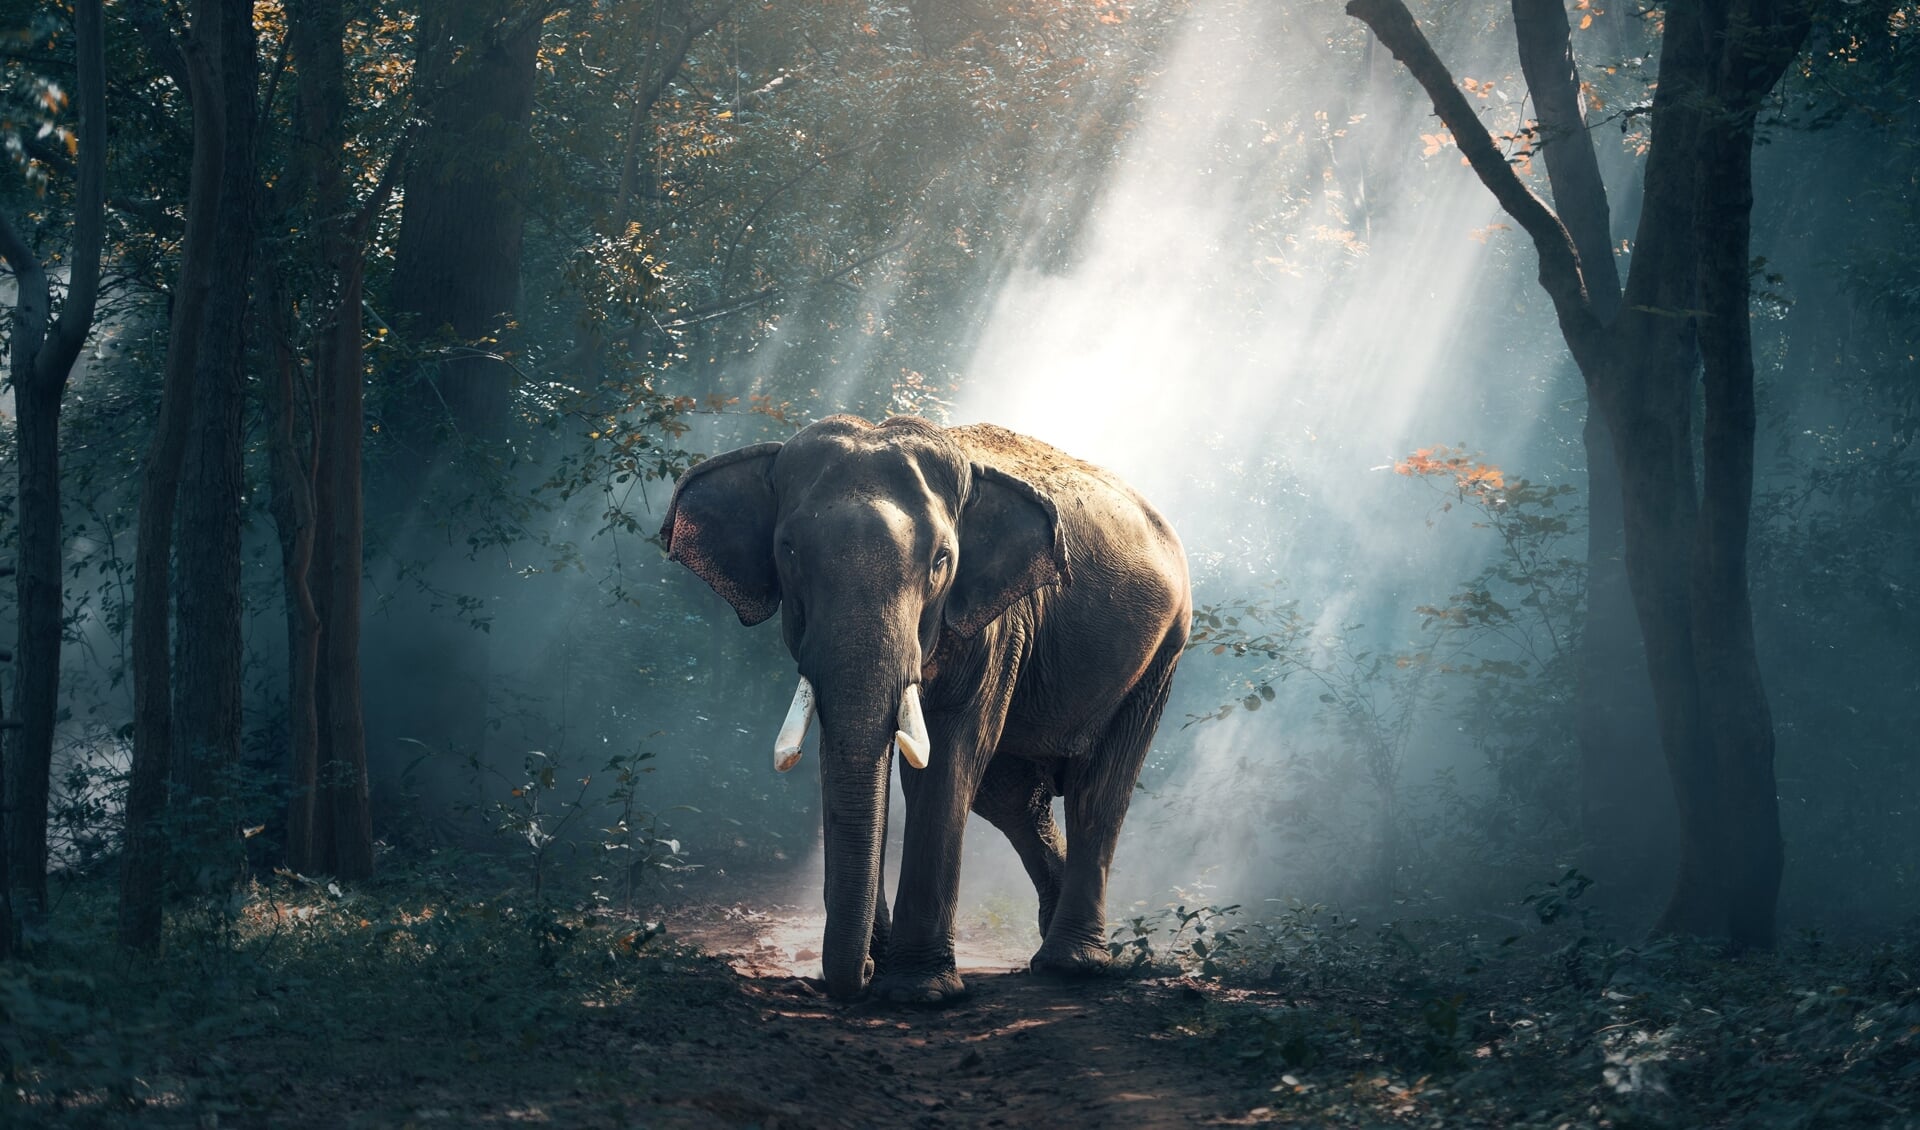 Alhoewel een olifant in het Nederlandse bos onwaarschijnlijk is, zit de Nederlandse natuur boordevol verrassingen